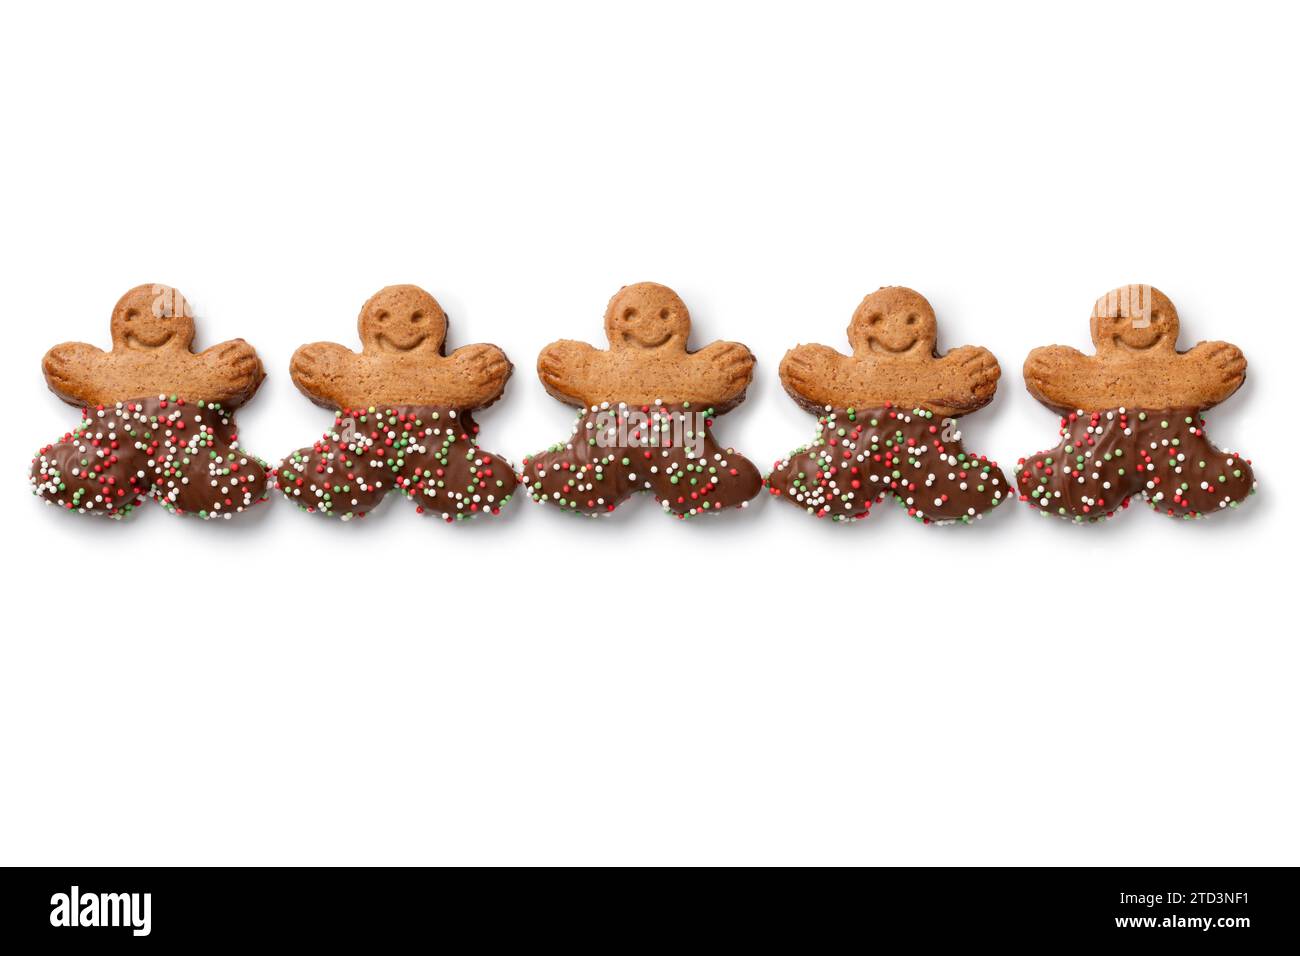 Joyeux chocolat gingembre hommes biscuits dans une rangée isolé sur fond blanc gros plan Banque D'Images